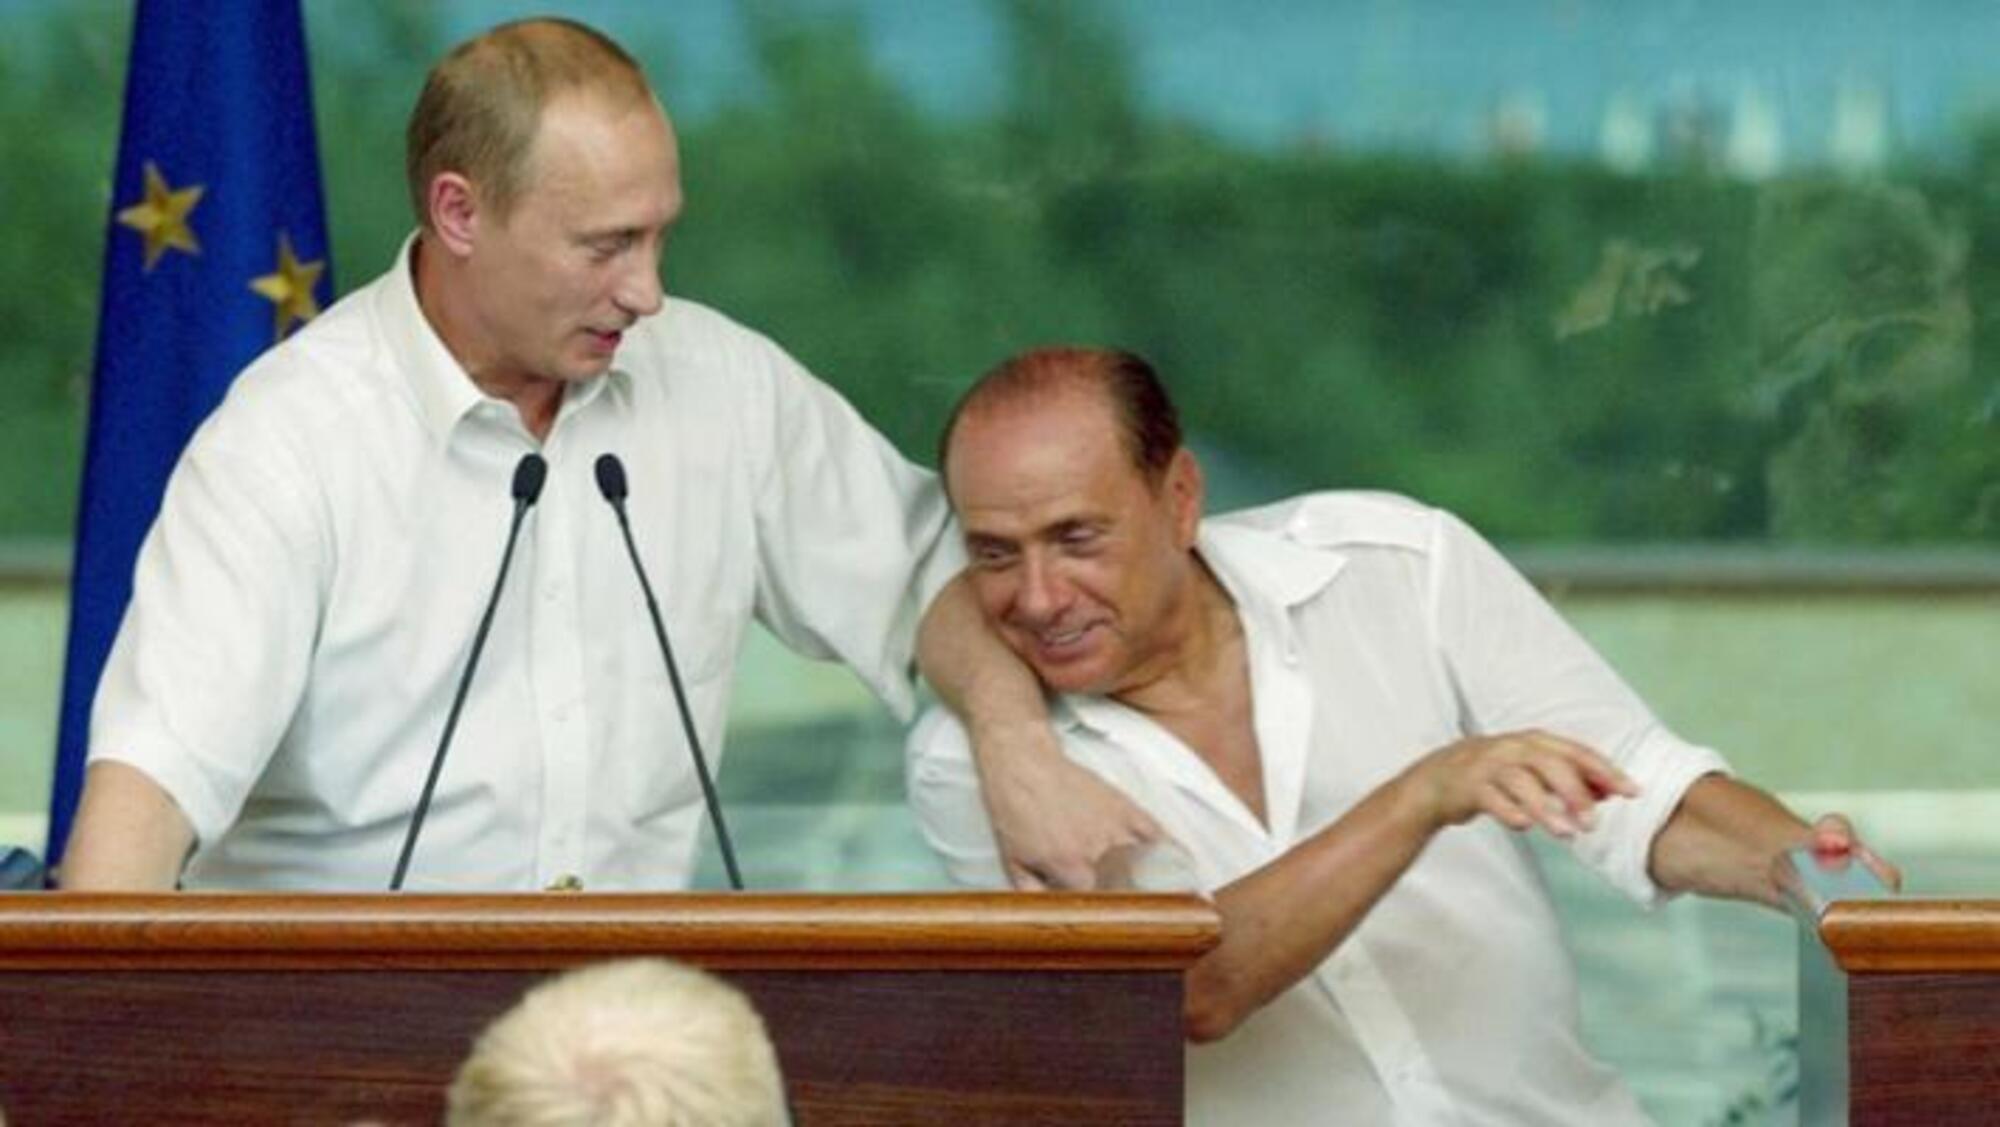 La complicit&agrave; tra Vladimir Putin e Silvio Berlusconi